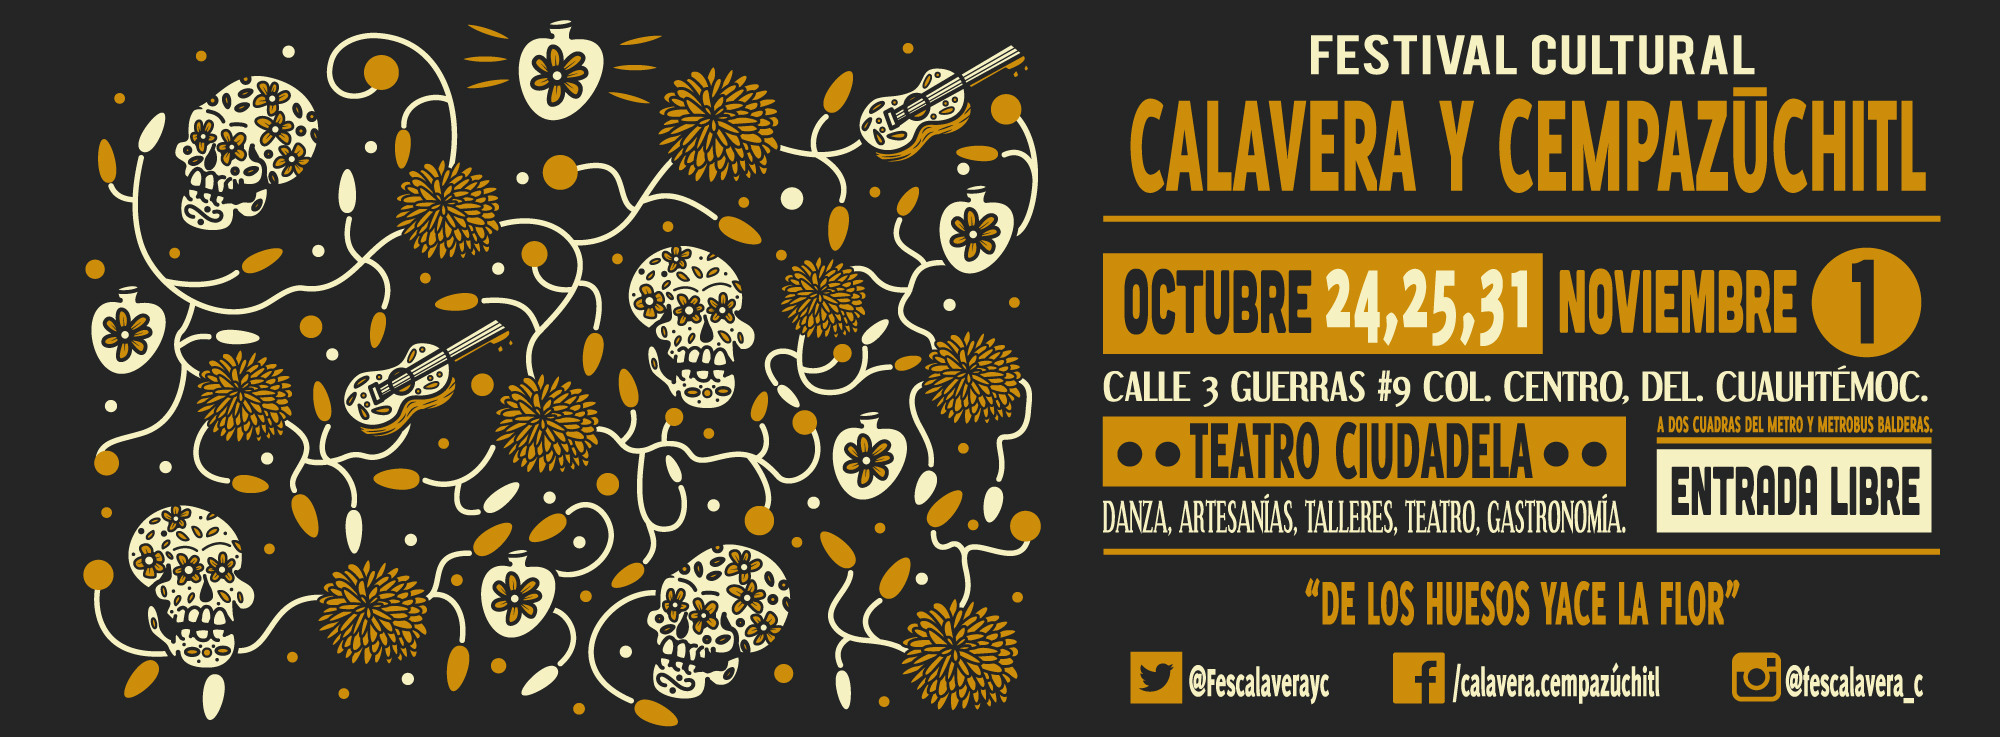 Festival Cultural Calavera y Cempazuchitl 2015